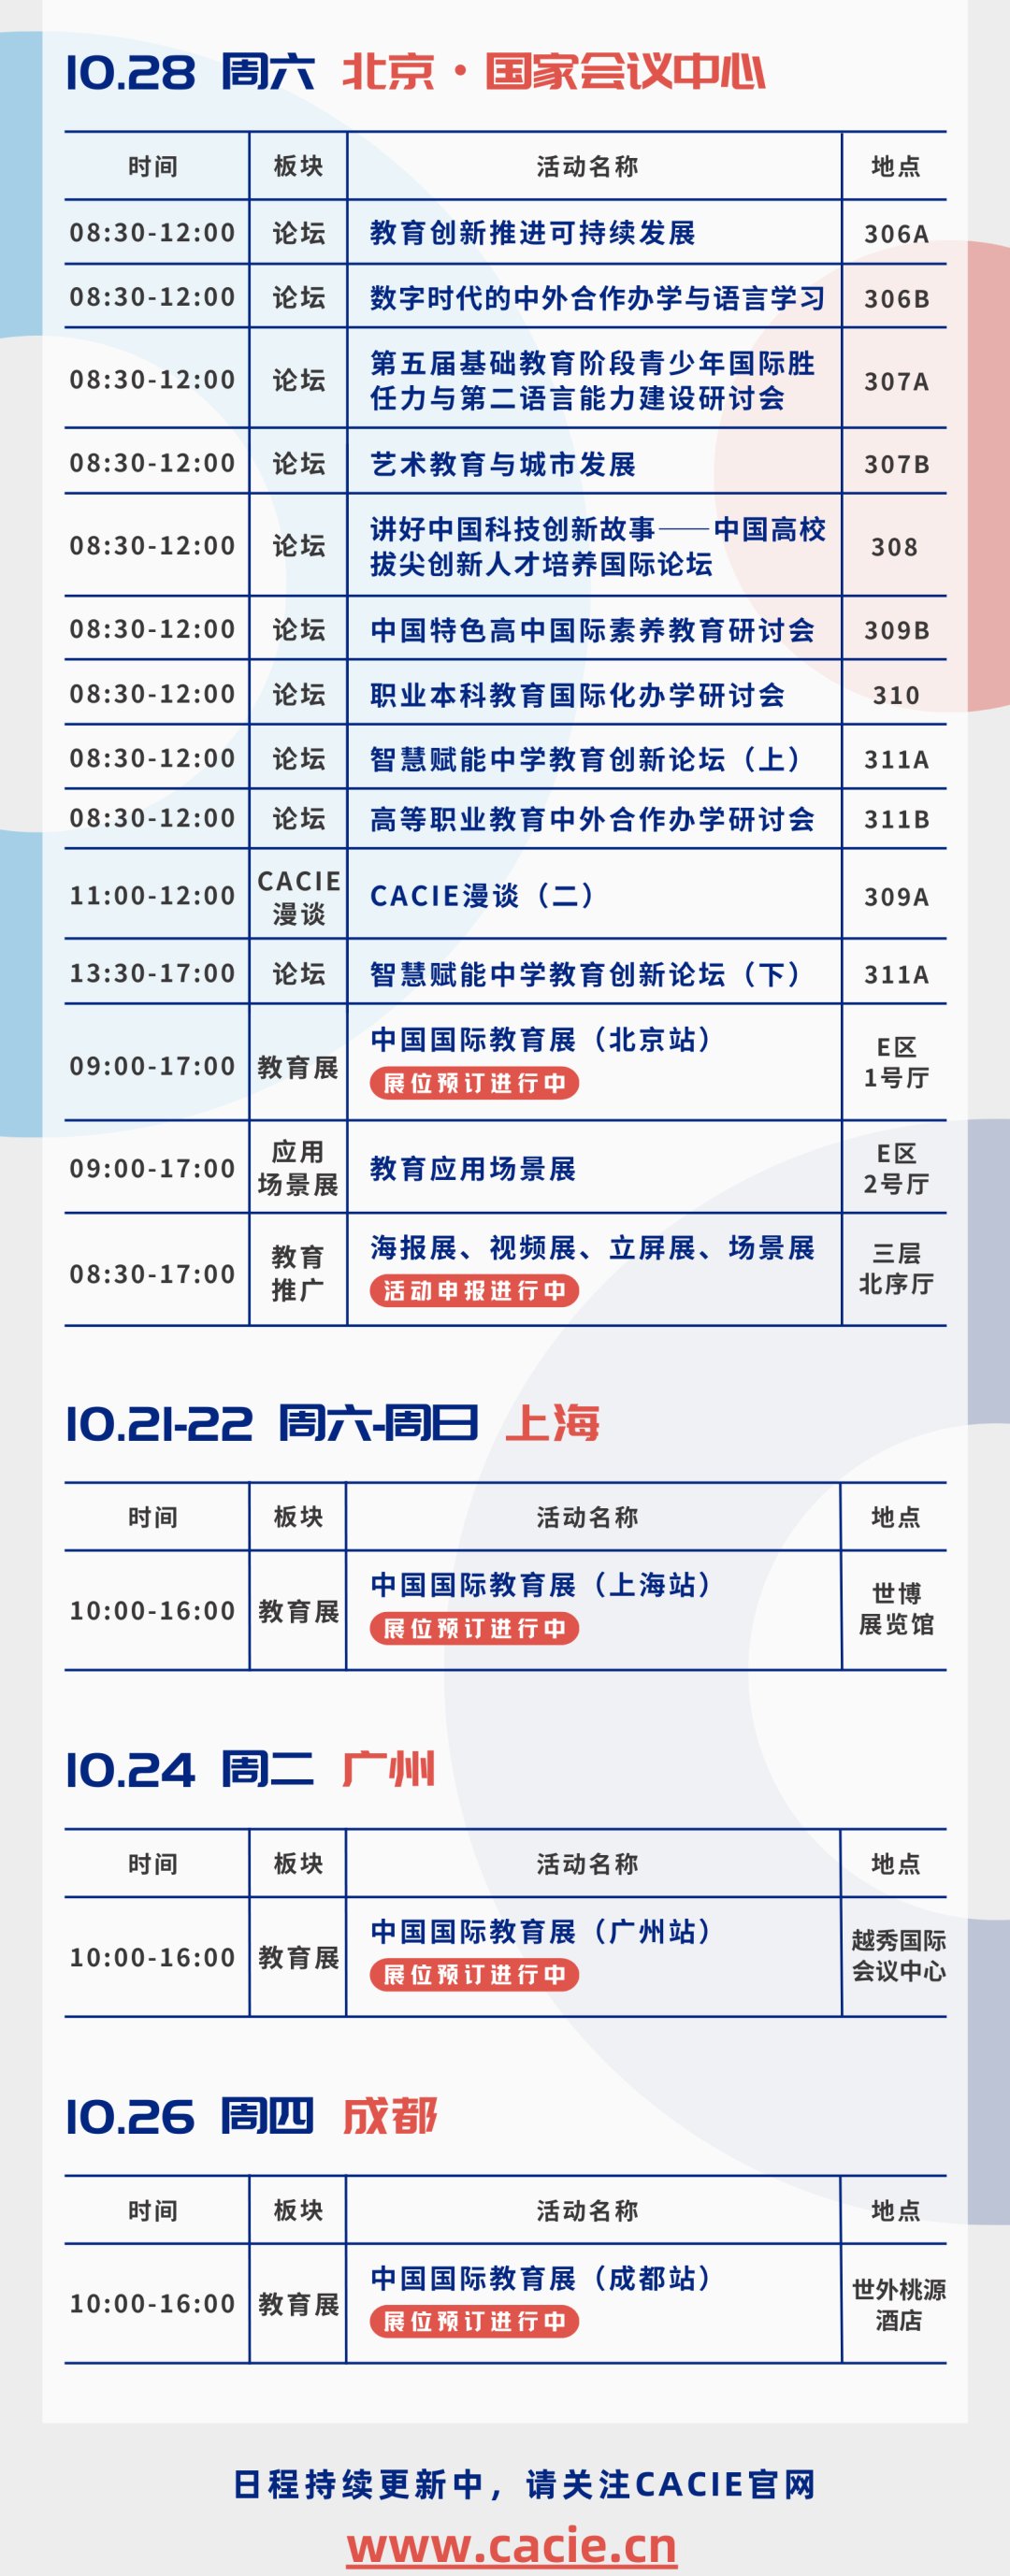 2023年中国国际教育年会暨展览日程公布